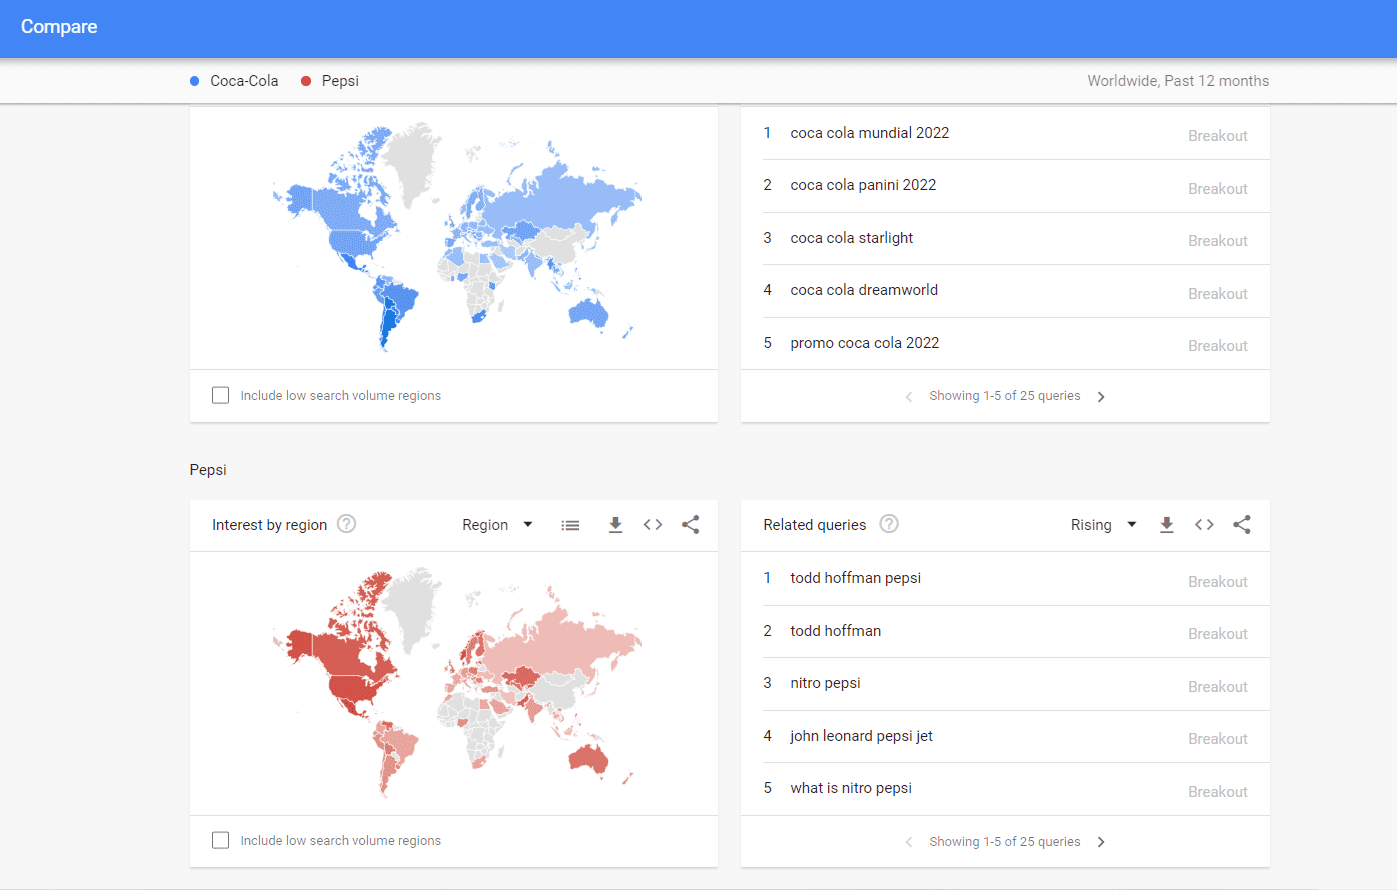 Comparación de tendencias de búsqueda de Google de marcas